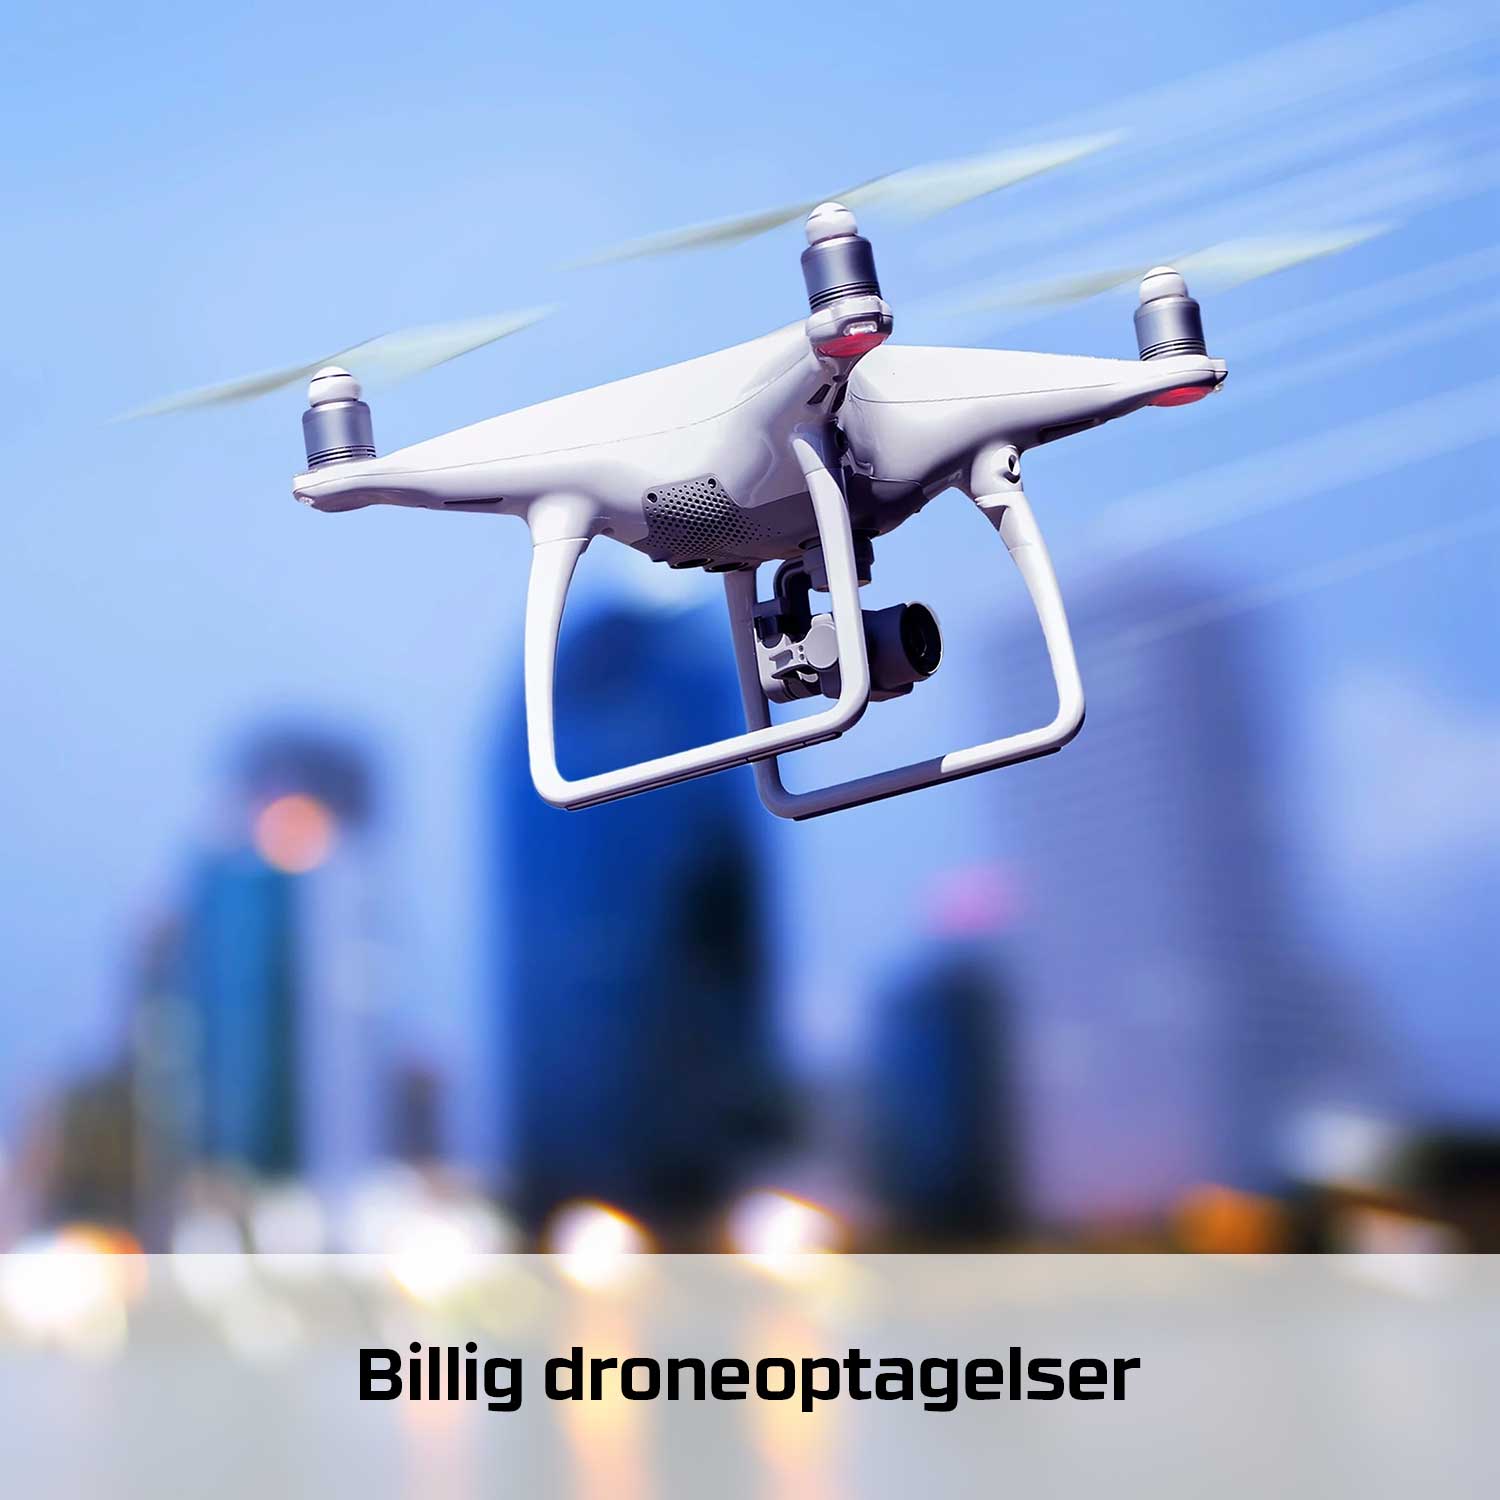 Socialdrone Droneoptagelser vi kører i hele DK